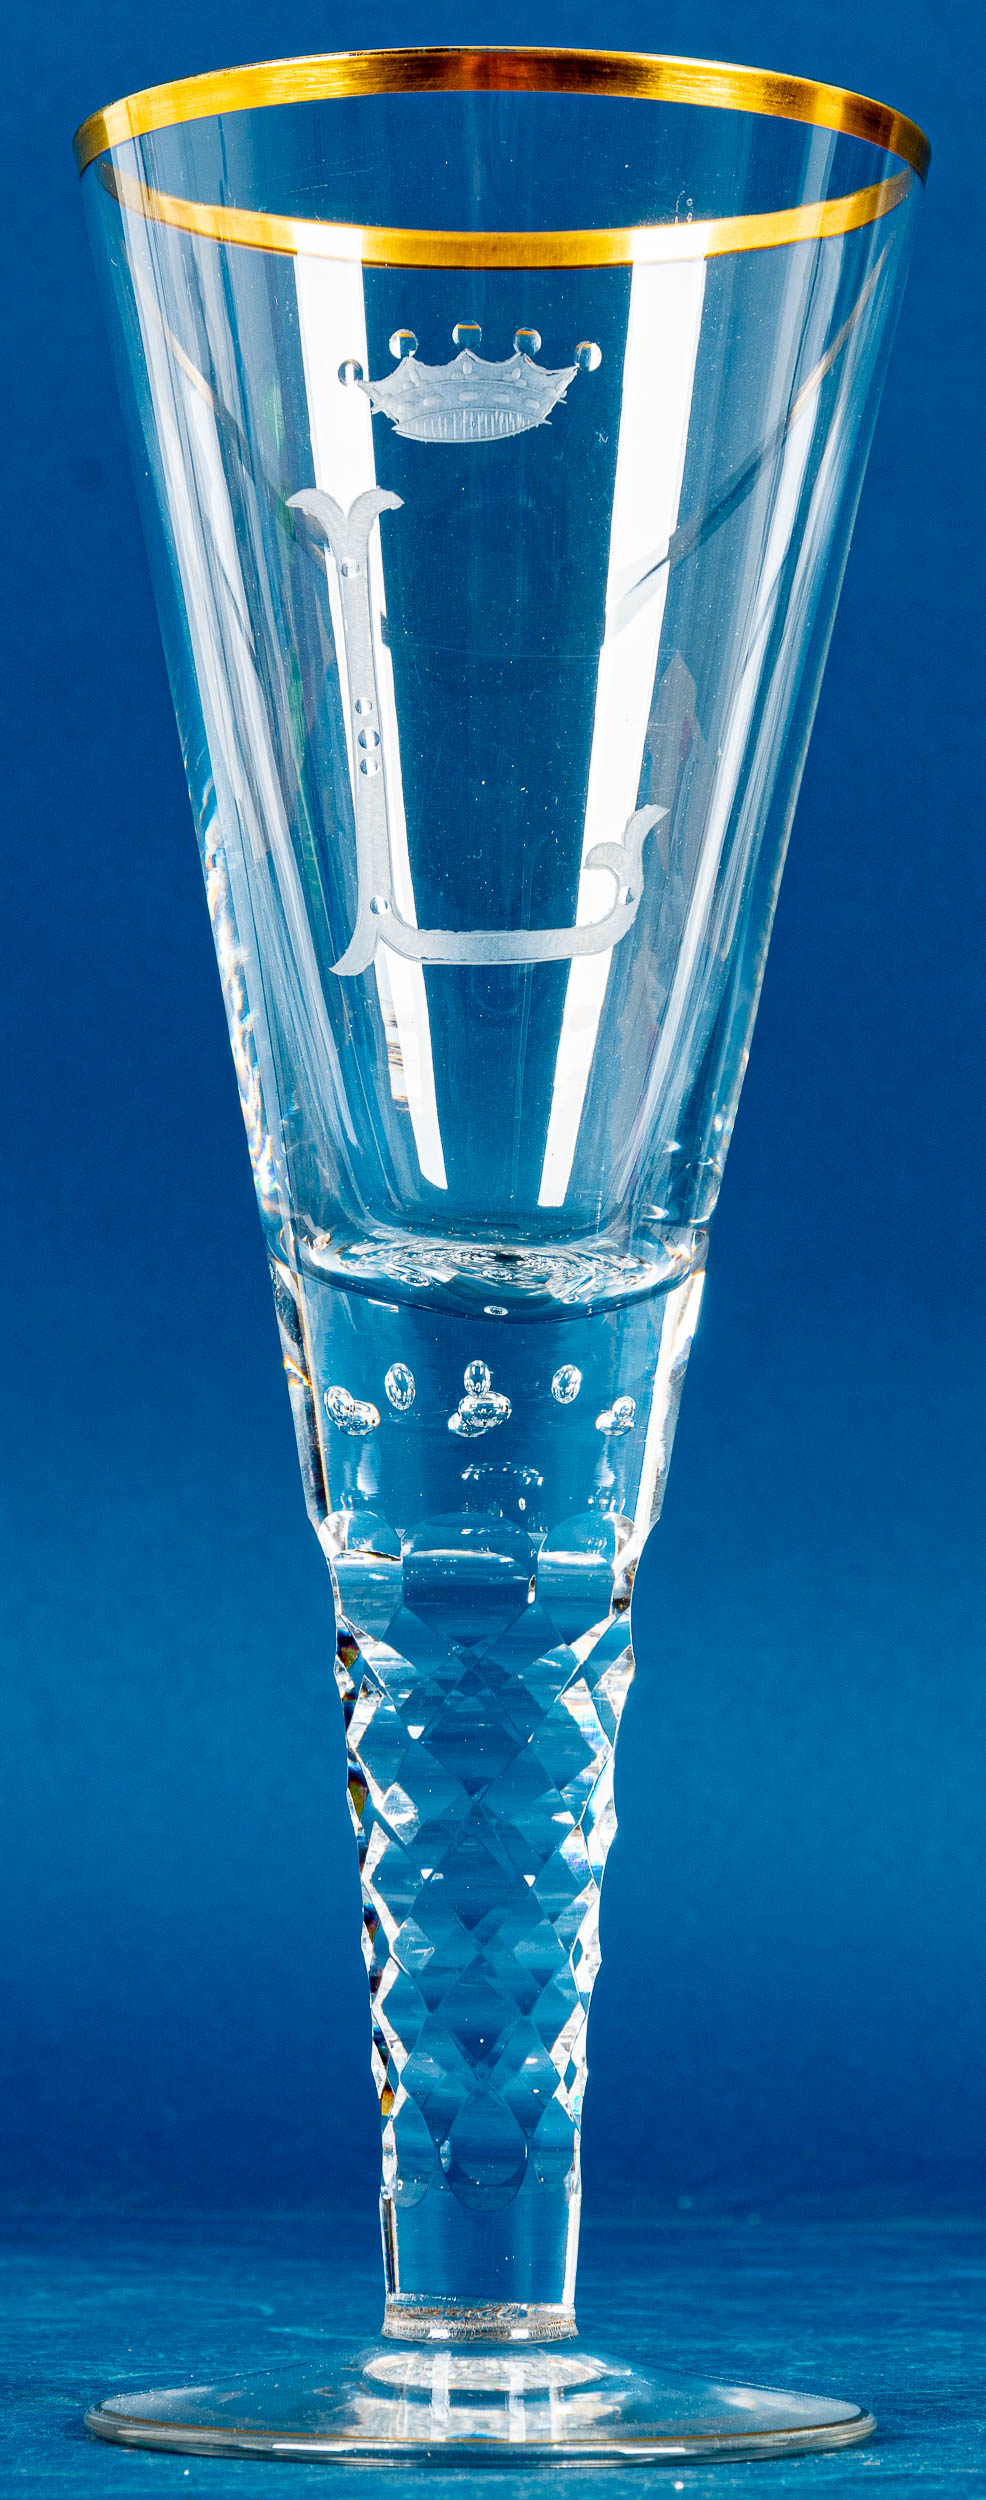 Großes Lauensteiner Pokalglas, farbloses Kristallglas mit aufwändigen Schliffdekoren; Luftblasenein - Bild 2 aus 7